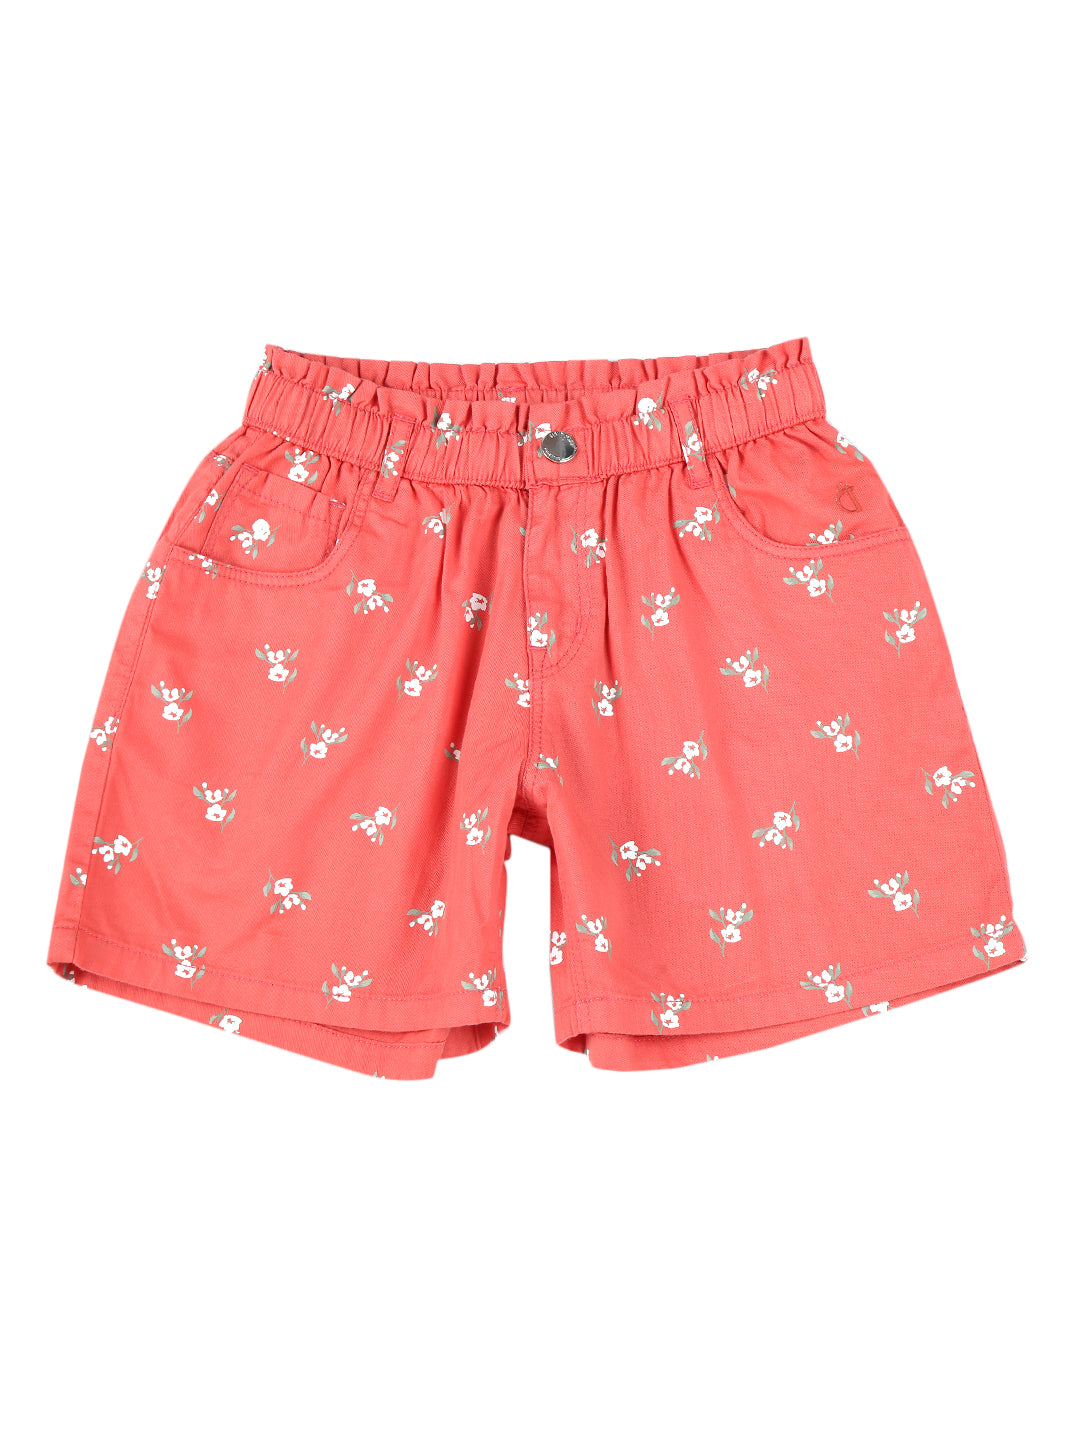 Girls Pink Cotton Printed Shorts